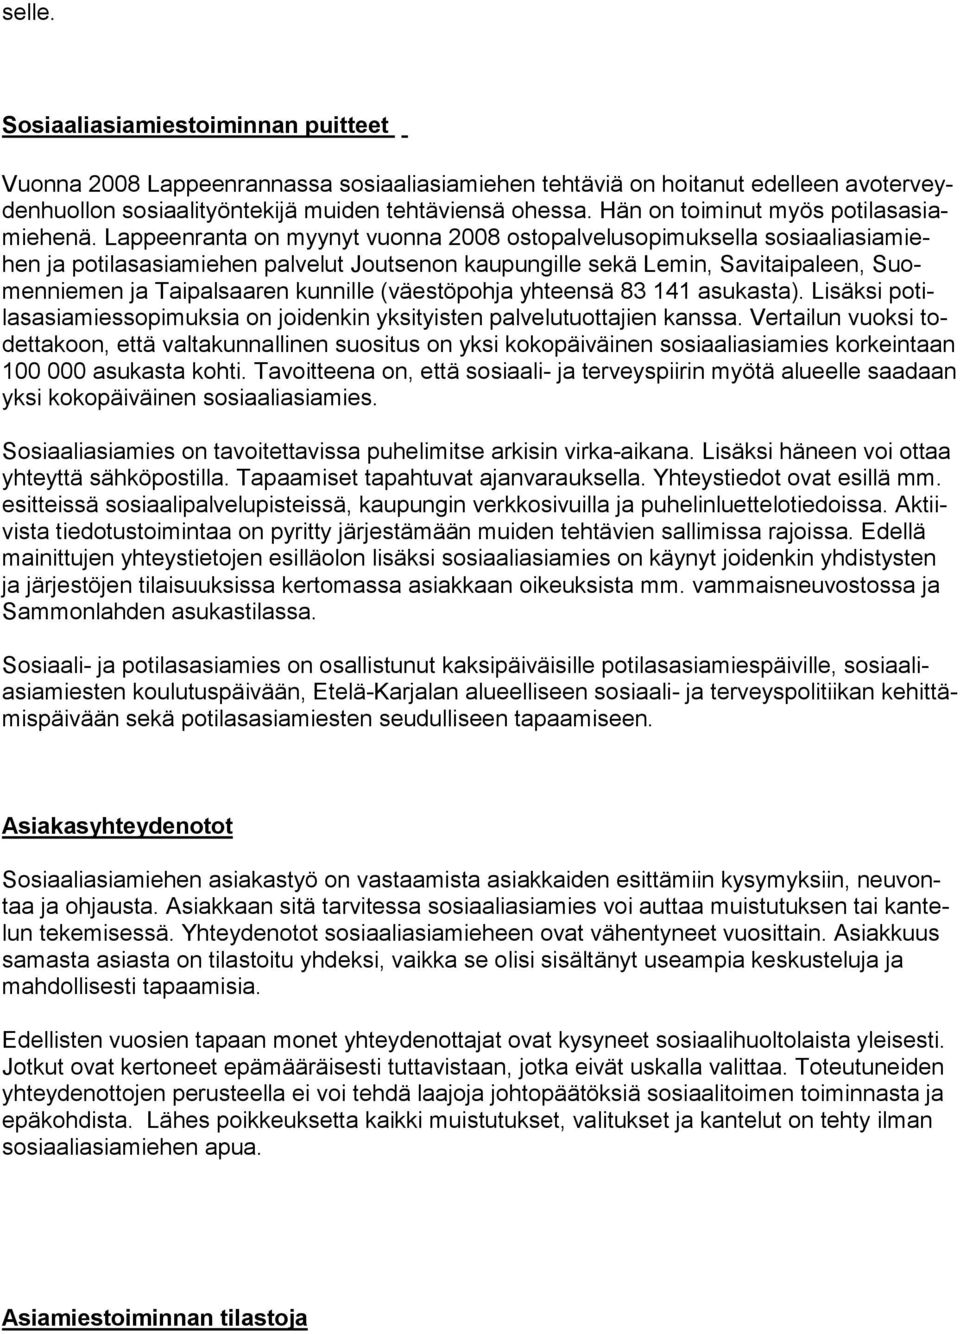 Lappeenranta on myynyt vuonna 2008 ostopalvelusopimuksella sosiaaliasiamiehen ja potilasasiamiehen palvelut Joutsenon kaupungille sekä Lemin, Savitaipaleen, Suomenniemen ja Taipalsaaren kunnille